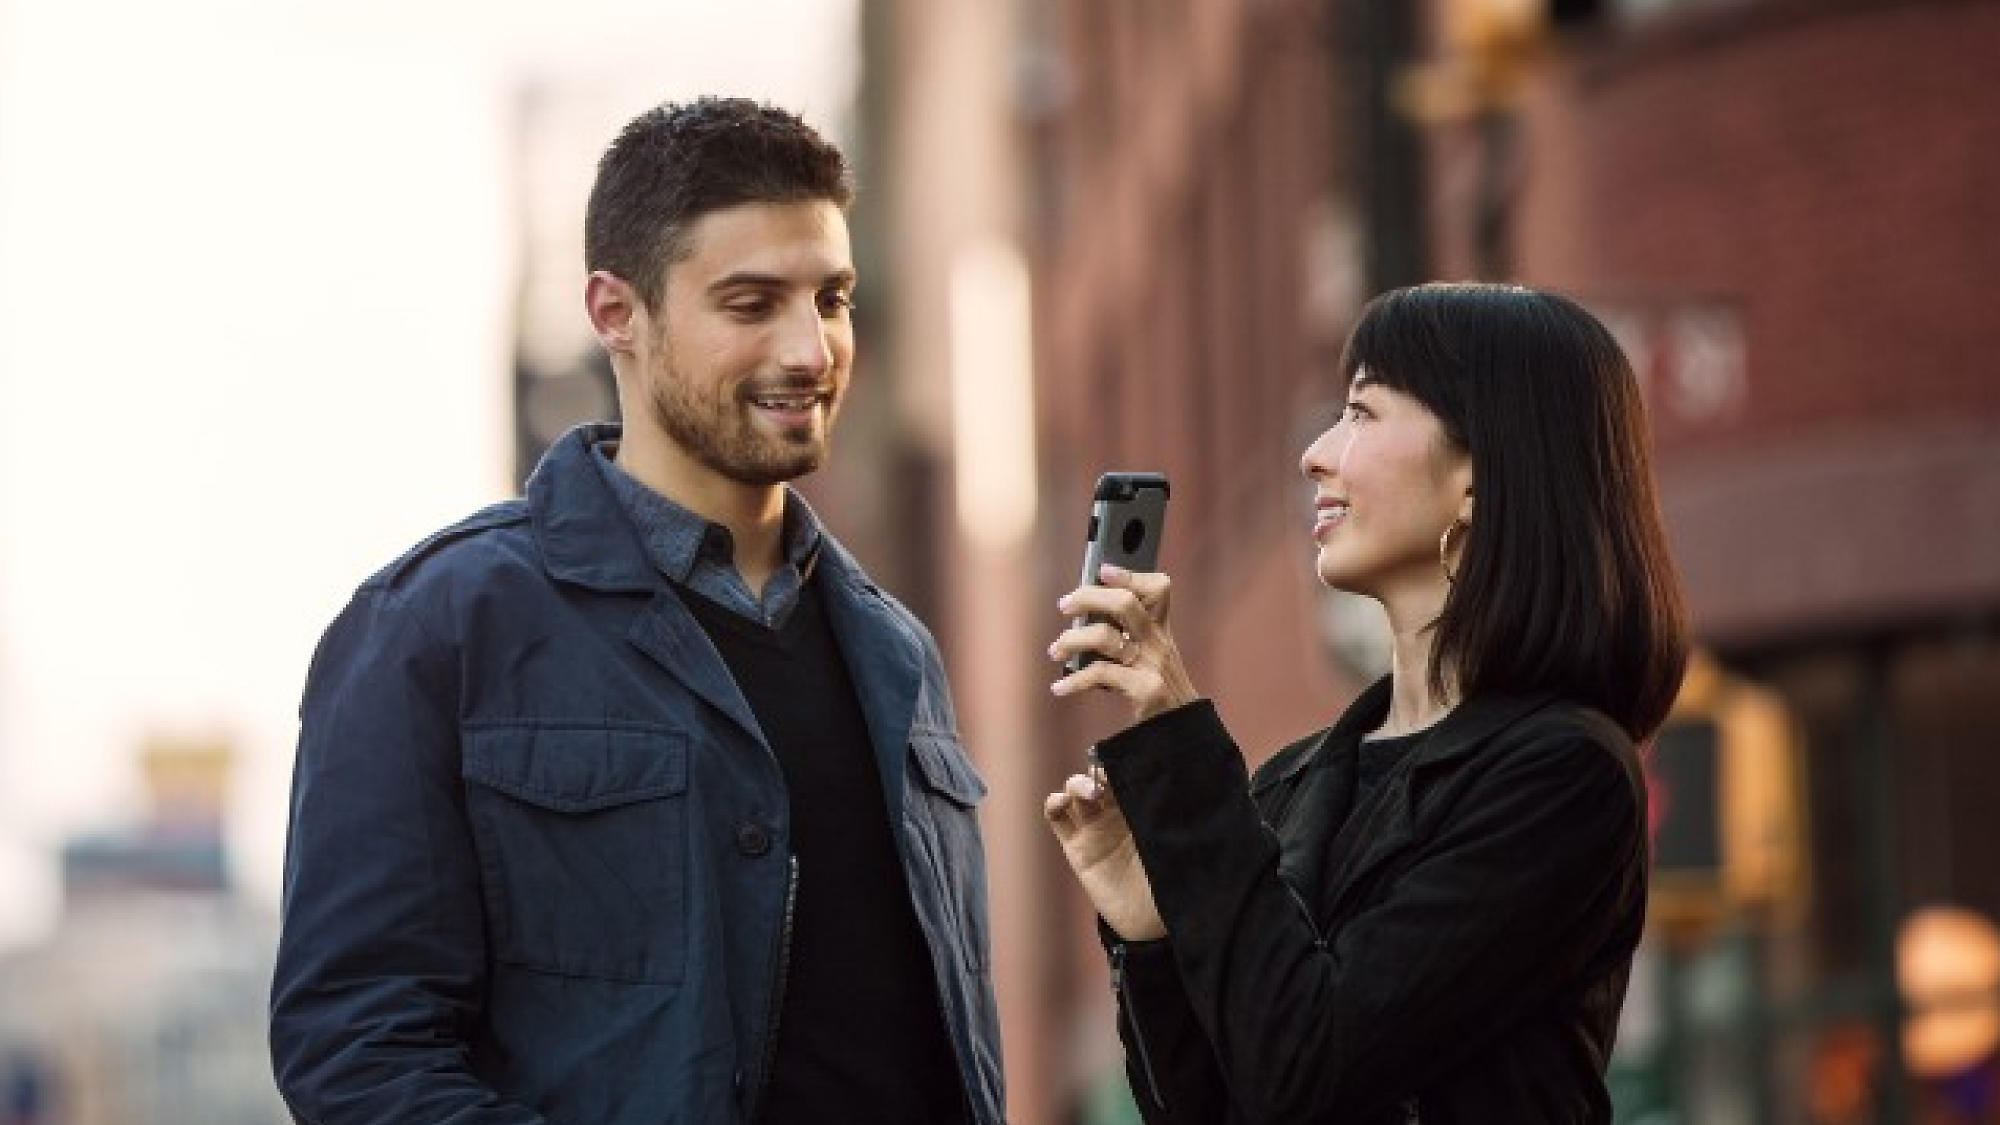 Une femme tenant un smartphone le pointe vers un homme alors qu’il se trouve dans une rue de la ville, souriant et engagé dans une conversation.